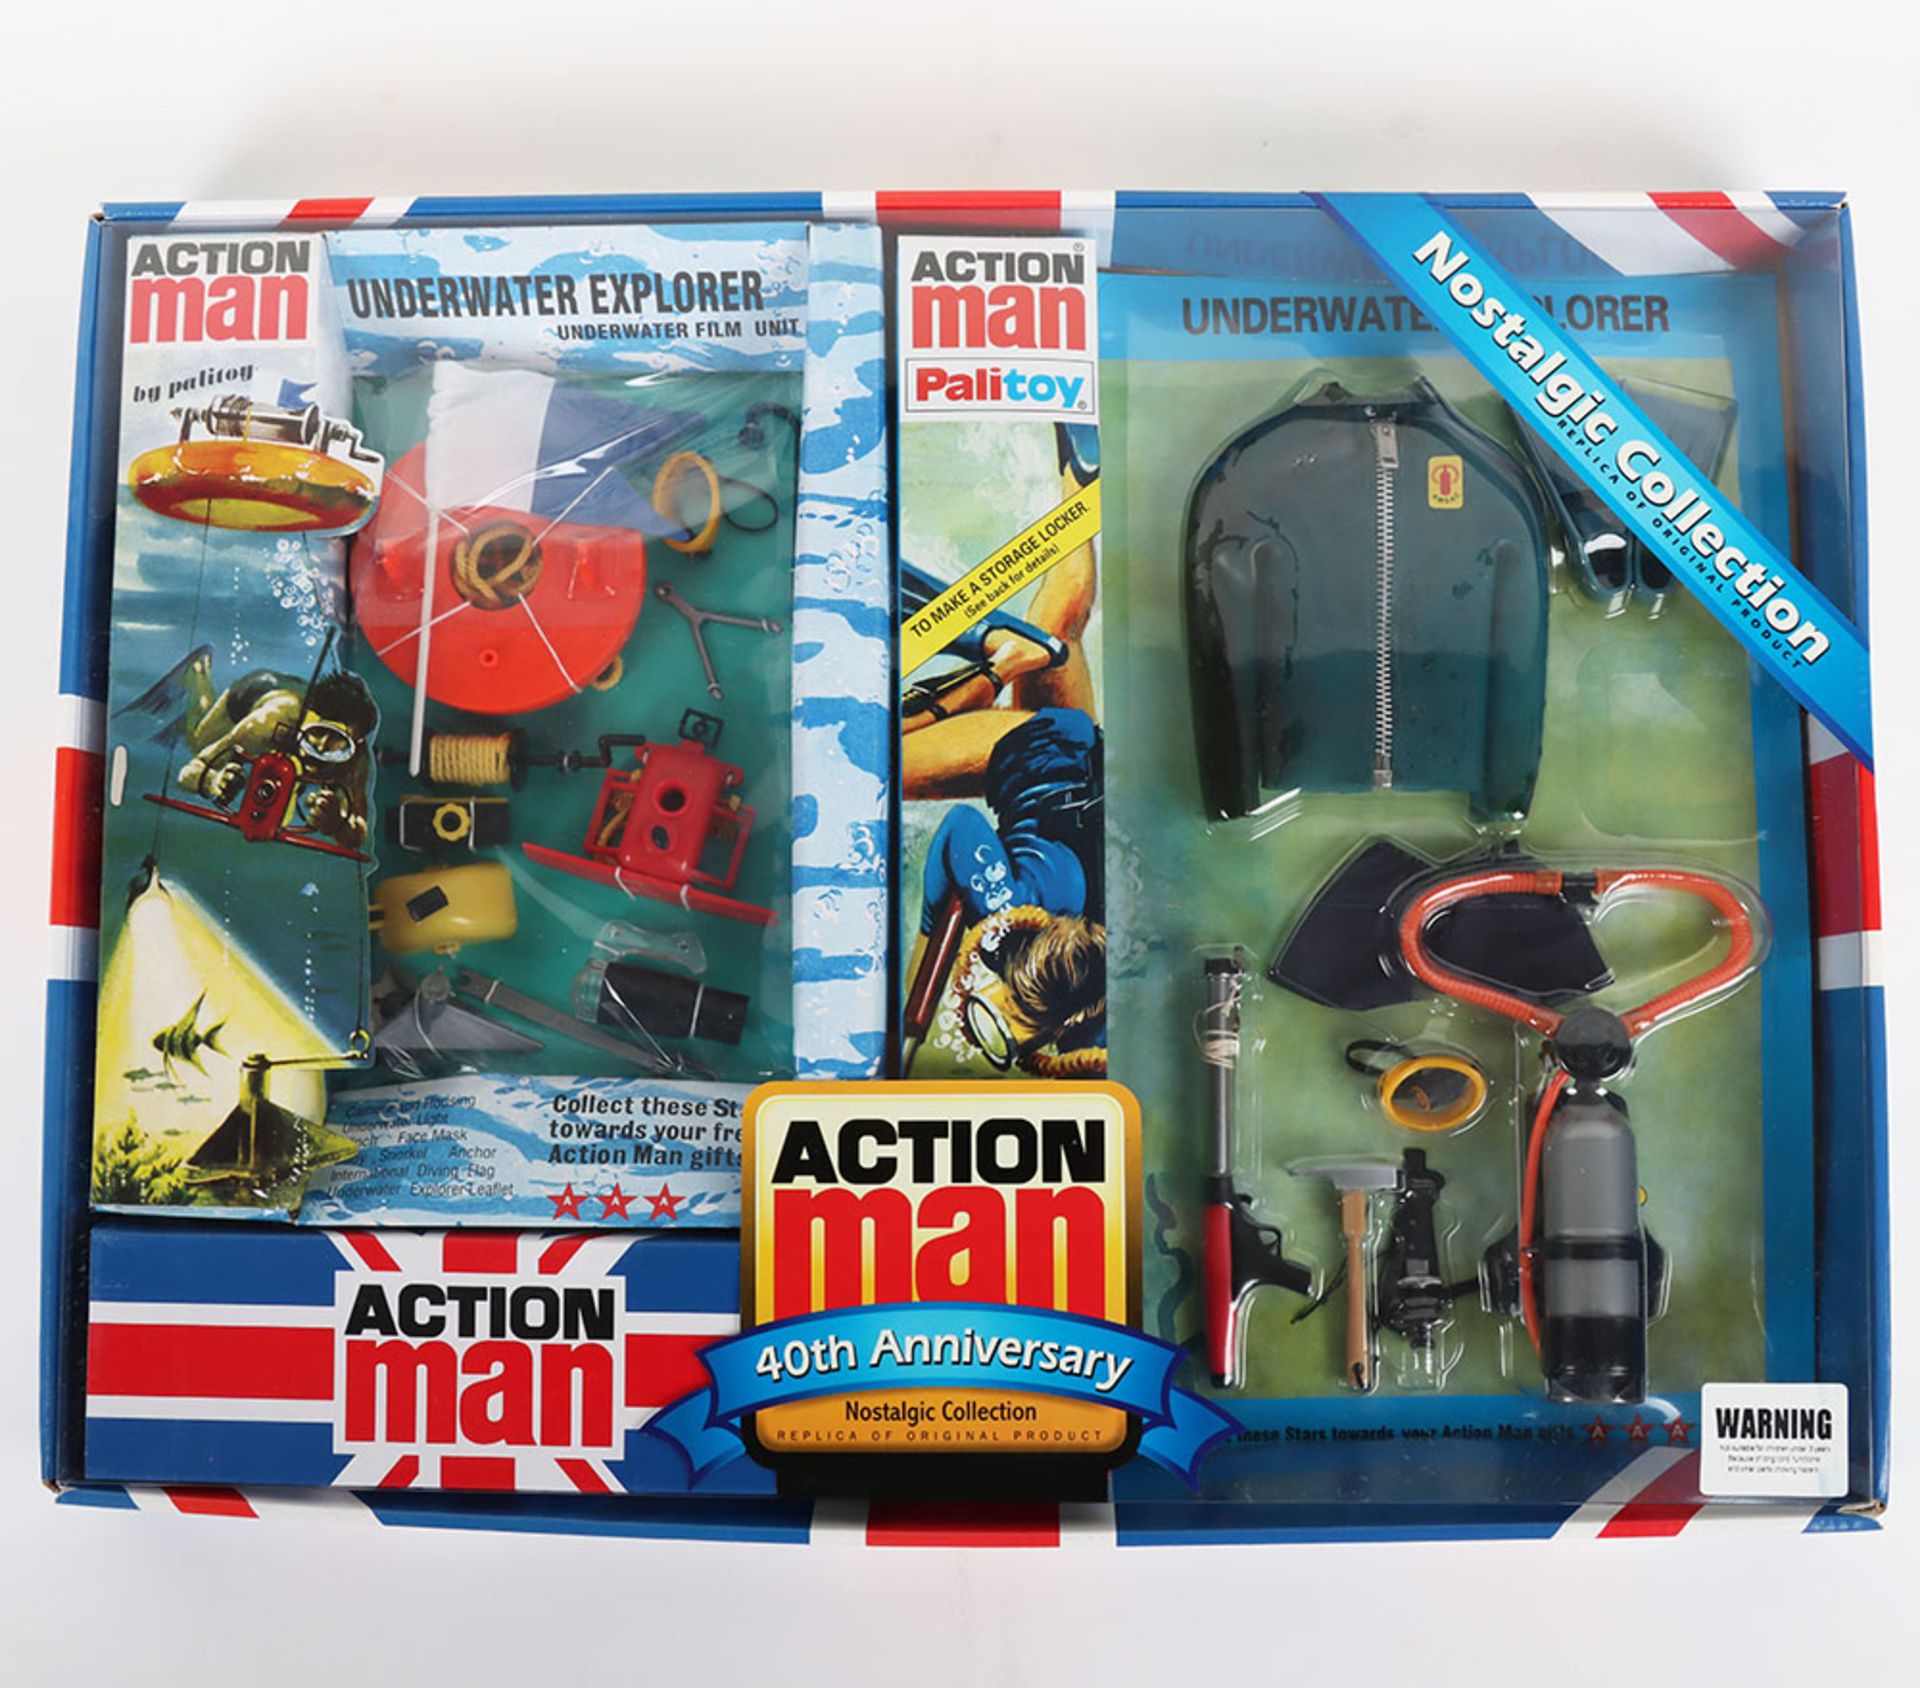 Action Man Underwater Explorer & Underwater Film Unit 40th Anniversary Nostalgic Collection